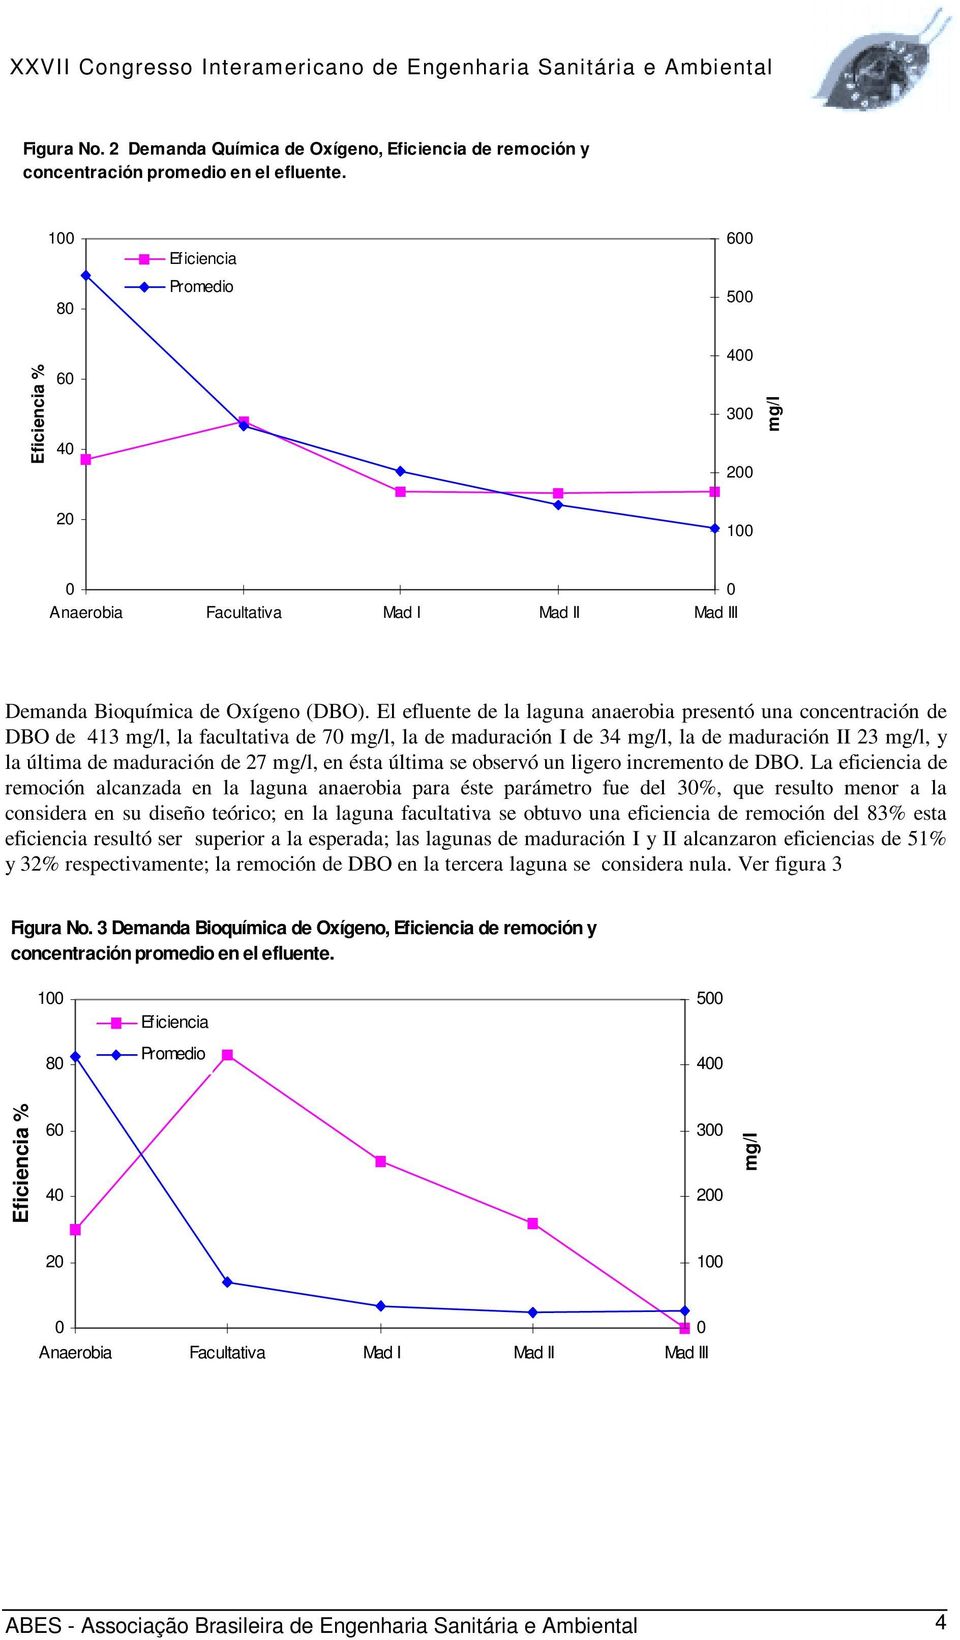 El efluente de la laguna anaerobia presentó una concentración de DBO de 413 mg/l, la facultativa de 7 mg/l, la de maduración I de 34 mg/l, la de maduración II 23 mg/l, y la última de maduración de 27